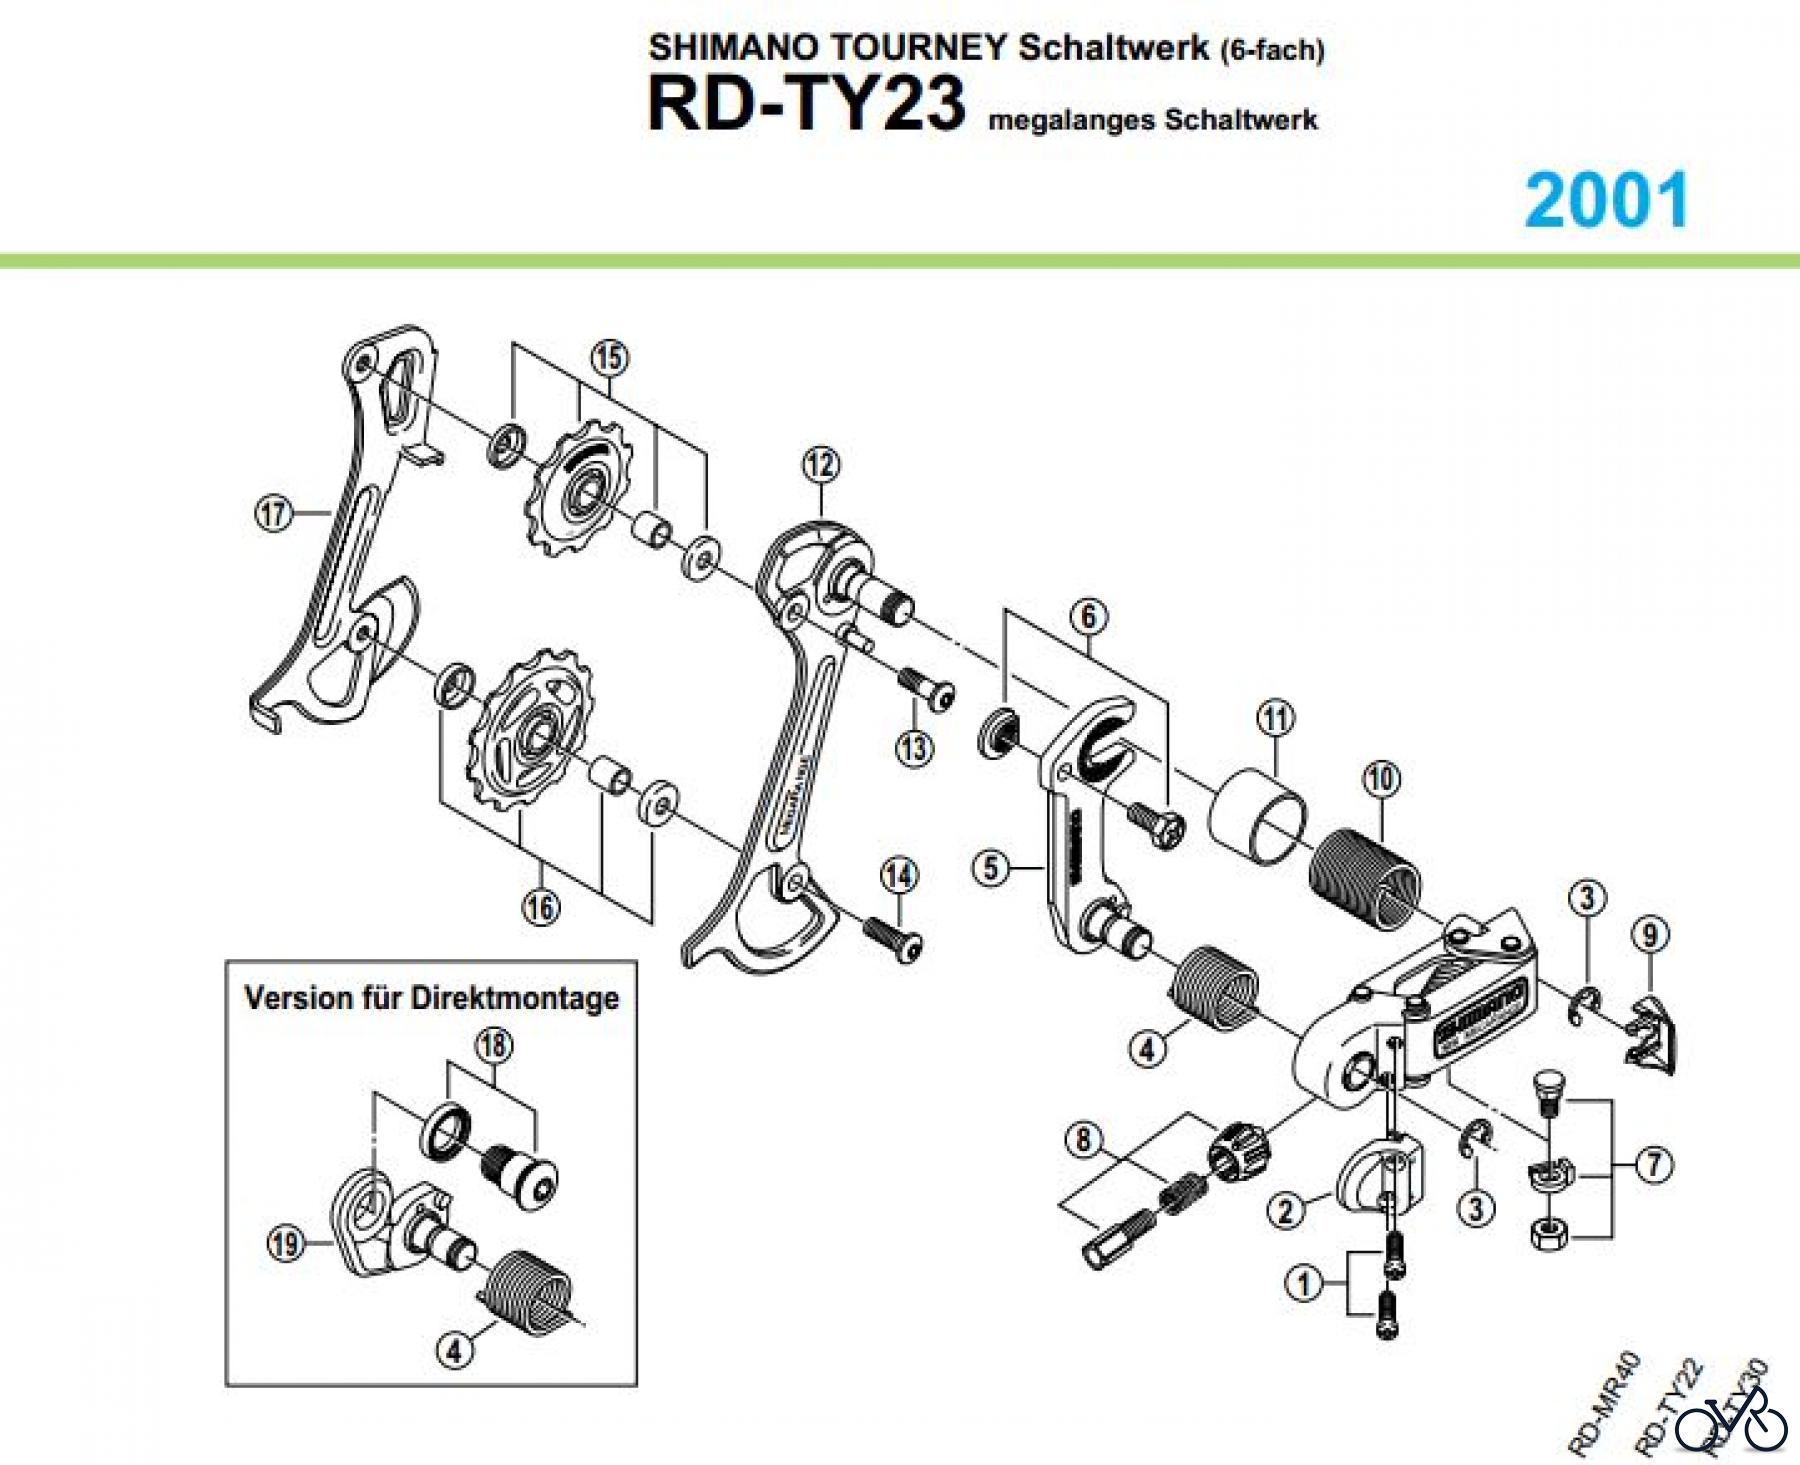  Shimano RD Rear Derailleur - Schaltwerk RD-TY23-047-053220179